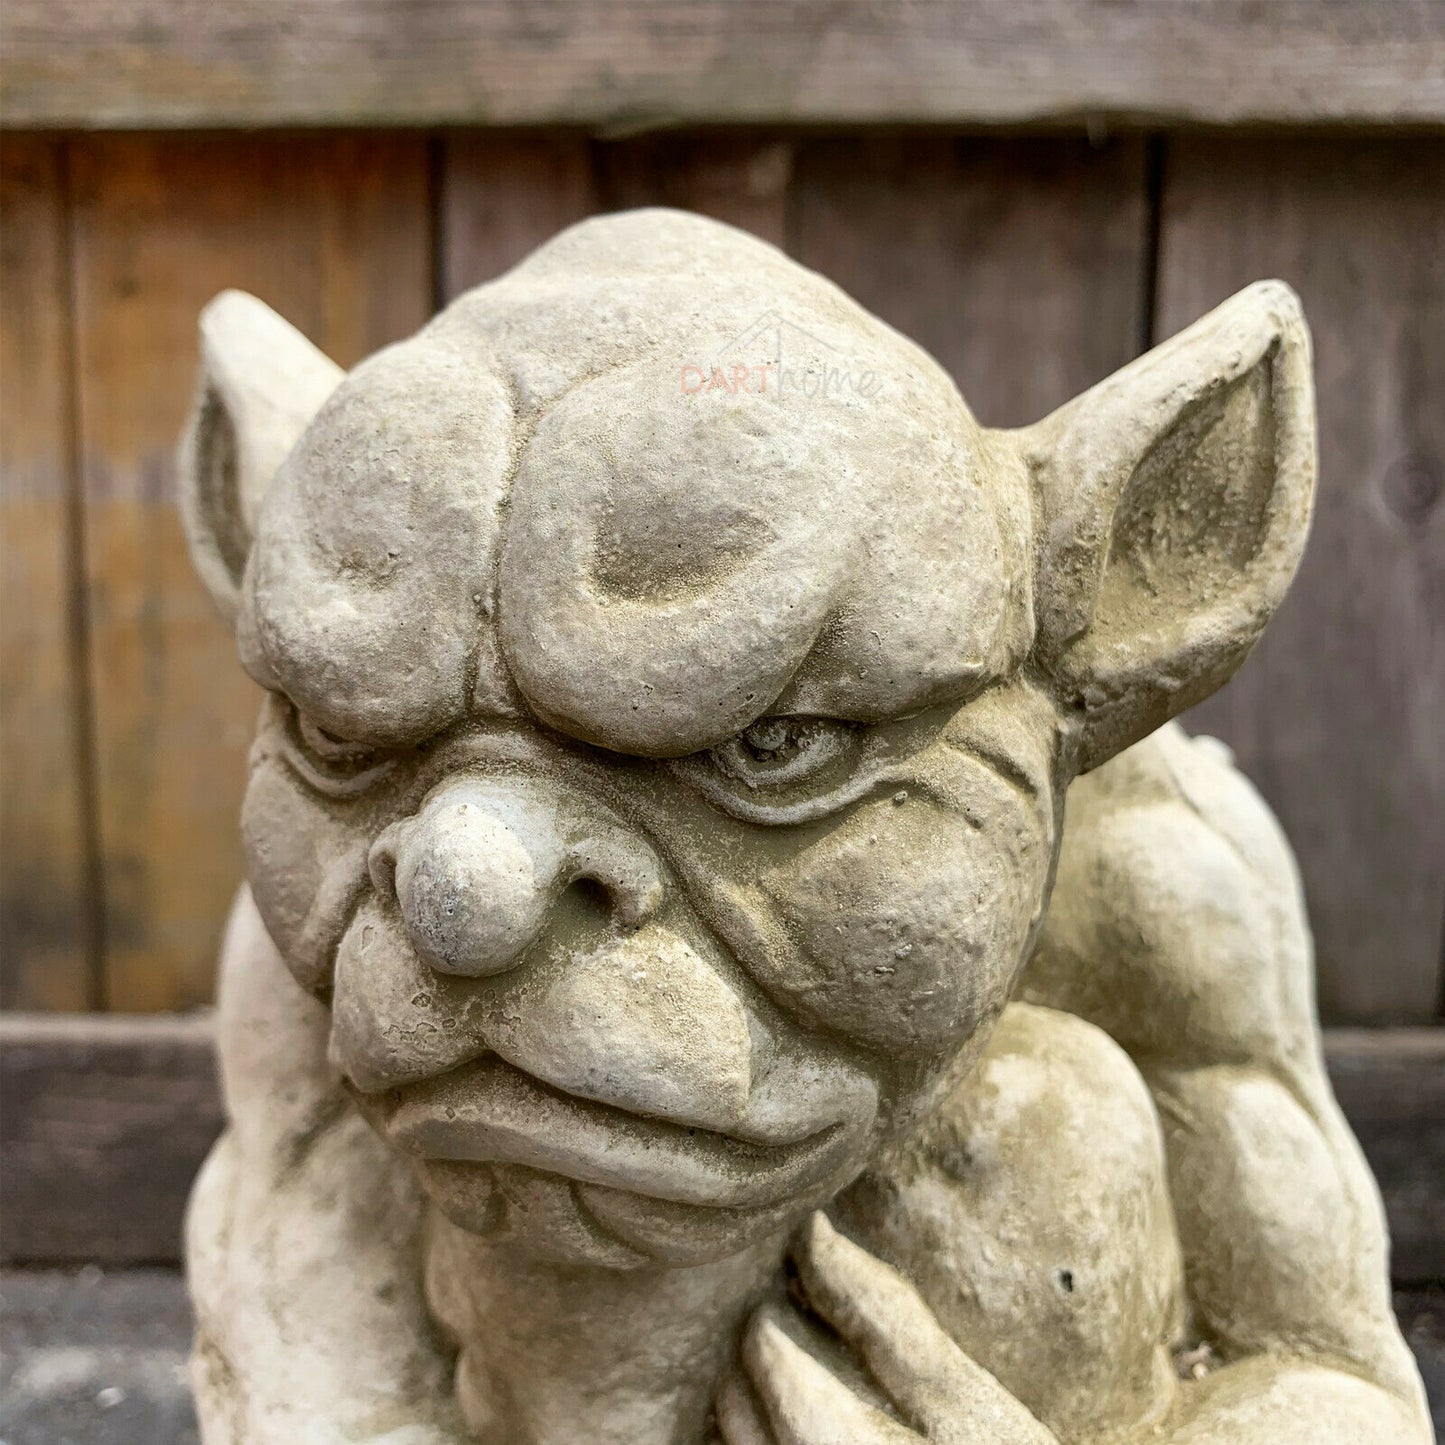 Gartenskulptur Grumpy Gargoyle aus Stein, 5 kg